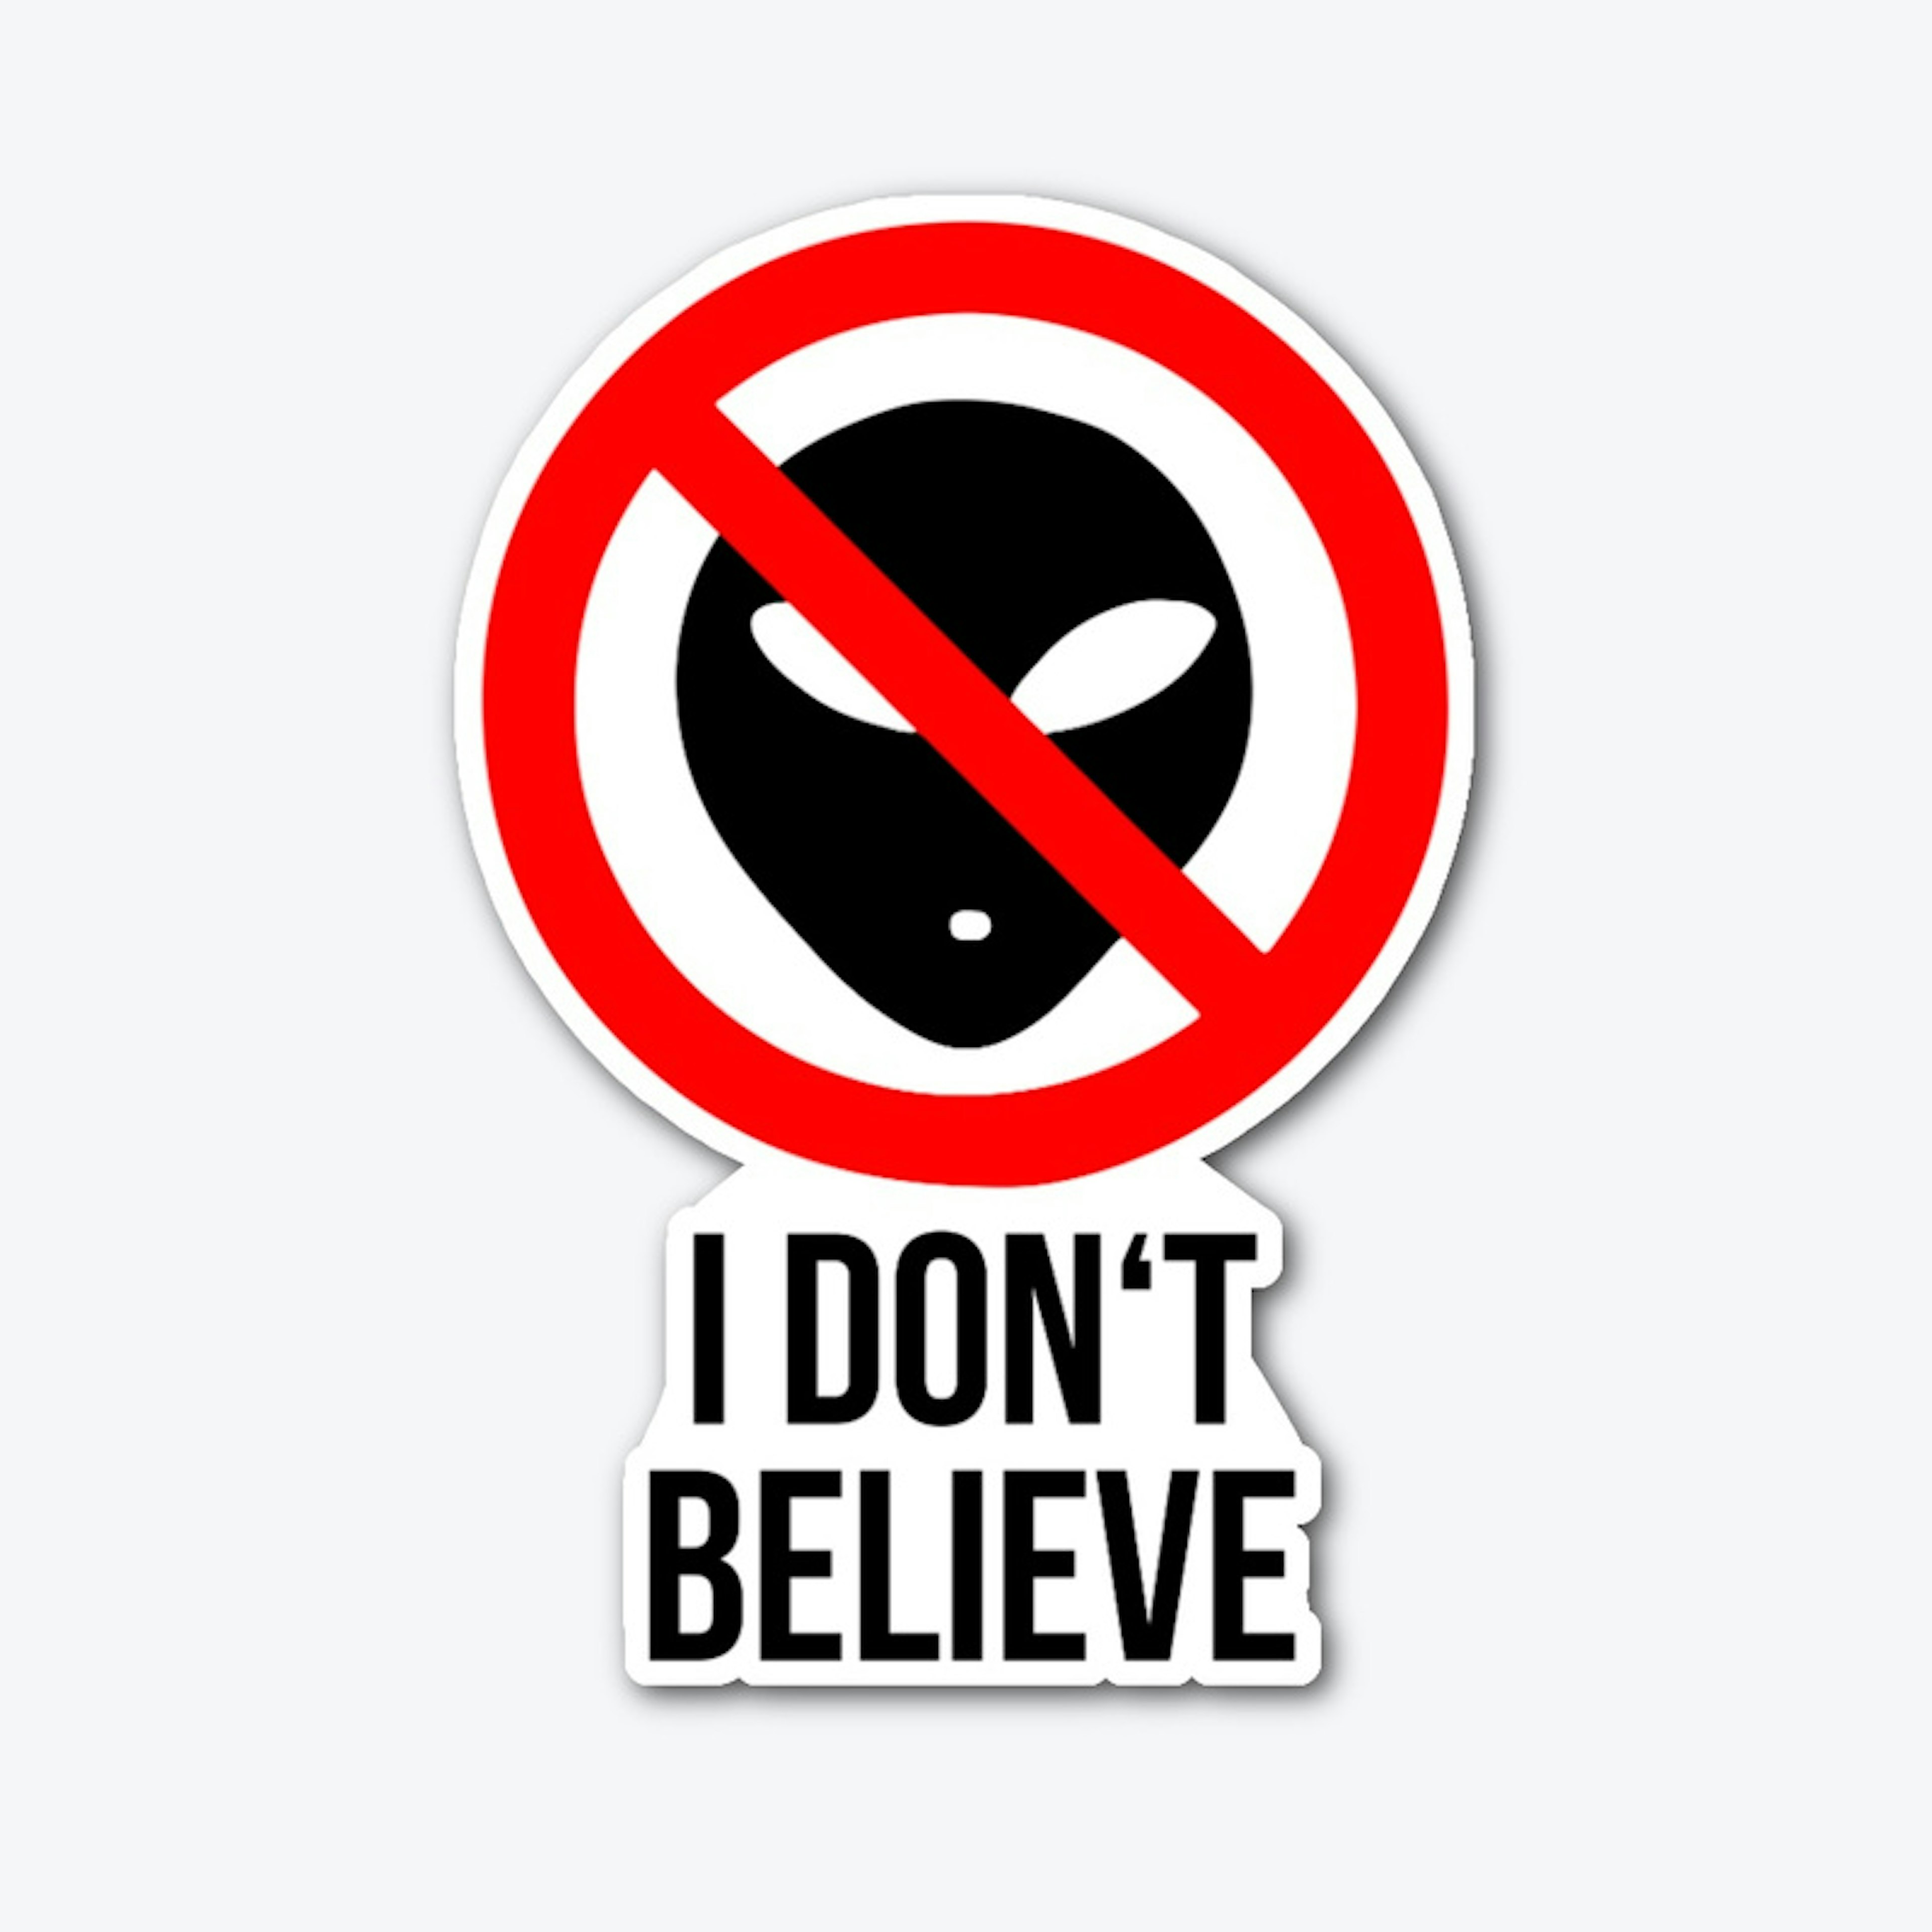 I don't believe in Aliens